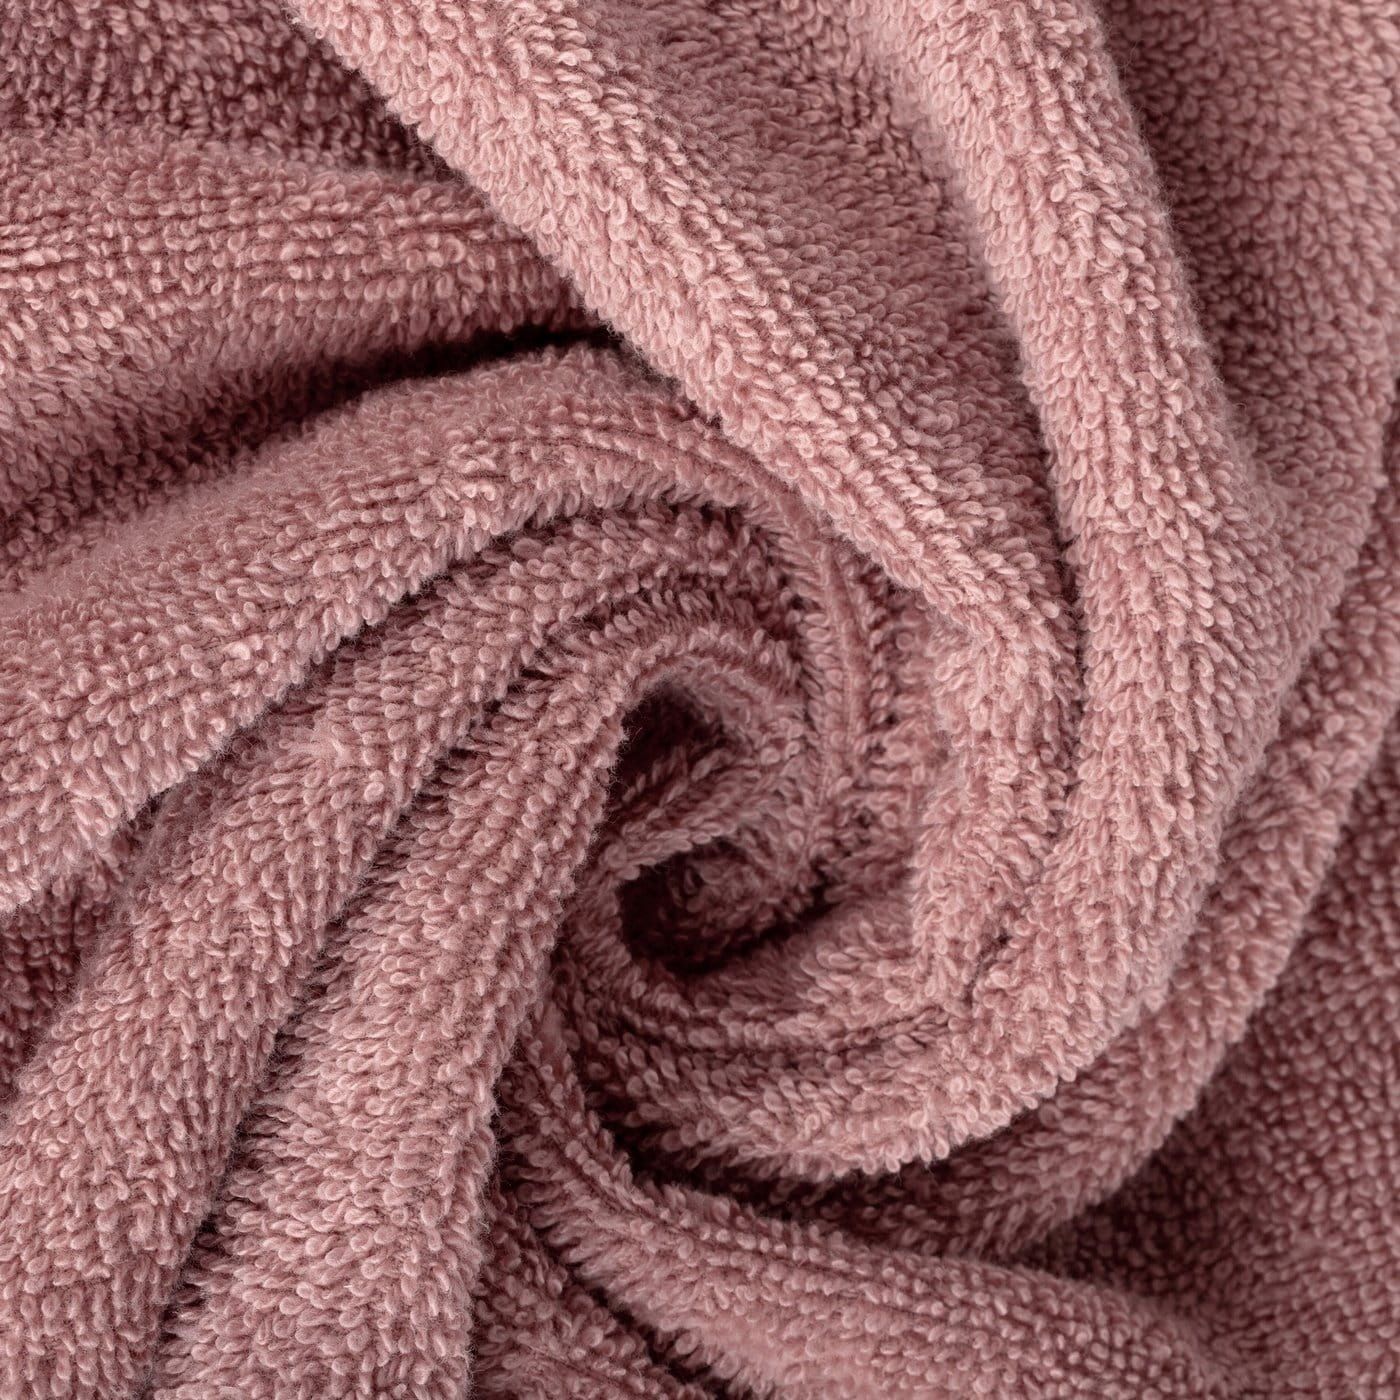 Ręcznik 30x50 pudrowy różowy z ozdobną welurową